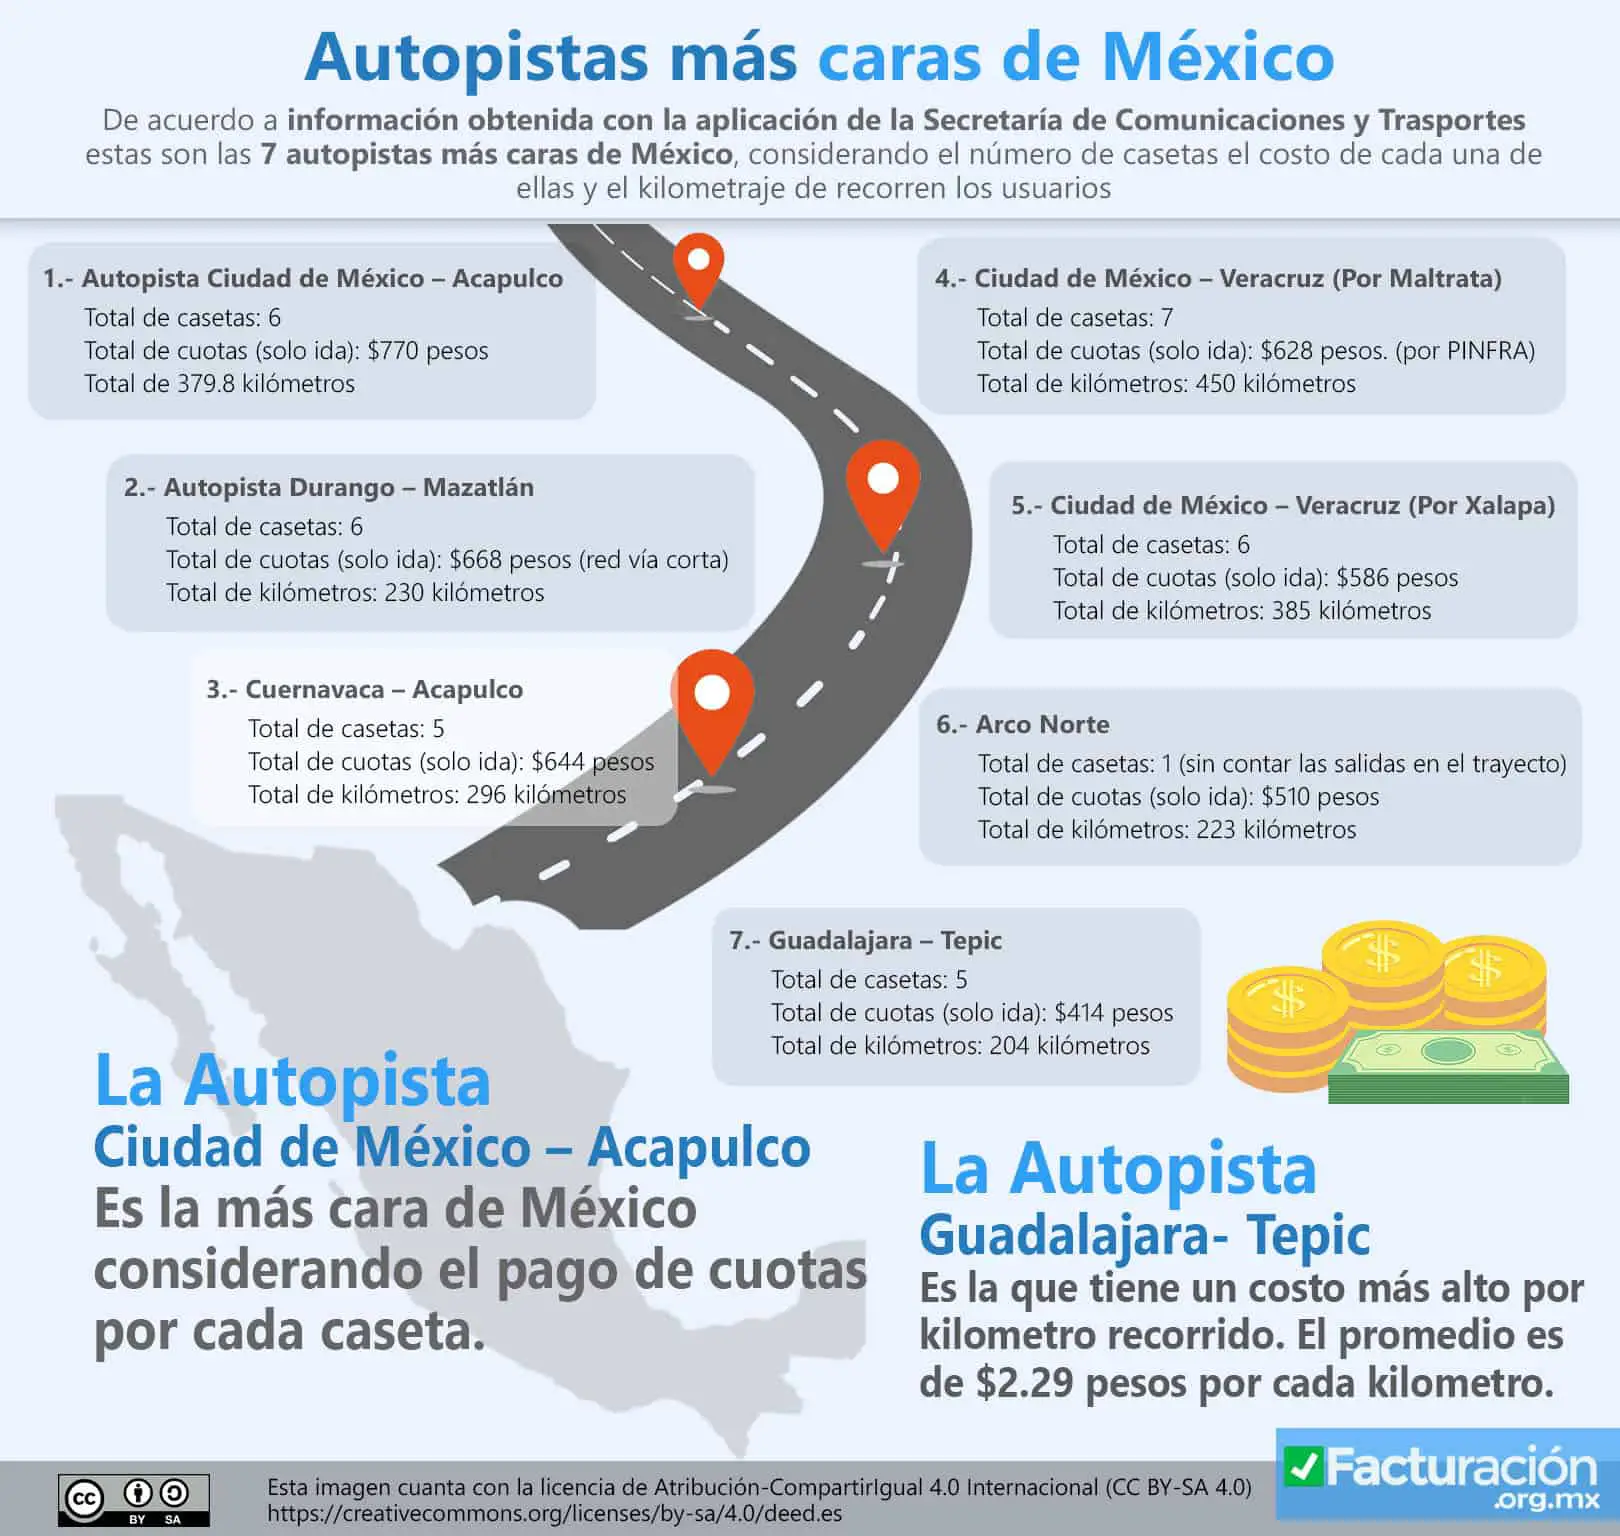 Autopistas más caras de México